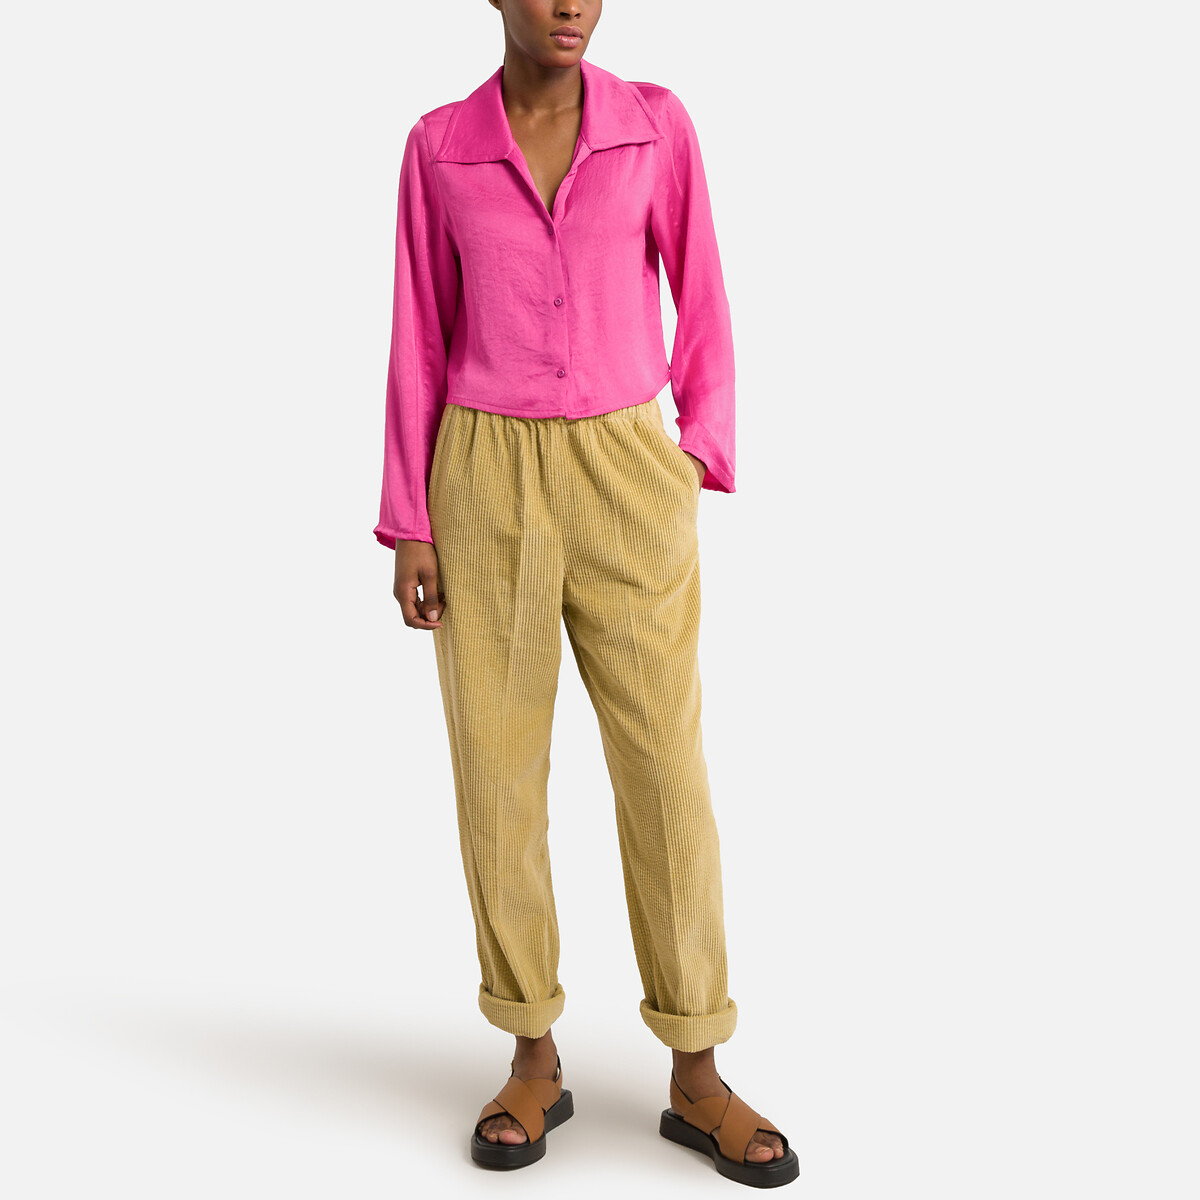 Рубашка Укороченная с длинными рукавами L розовый LaRedoute, размер L - фото 2